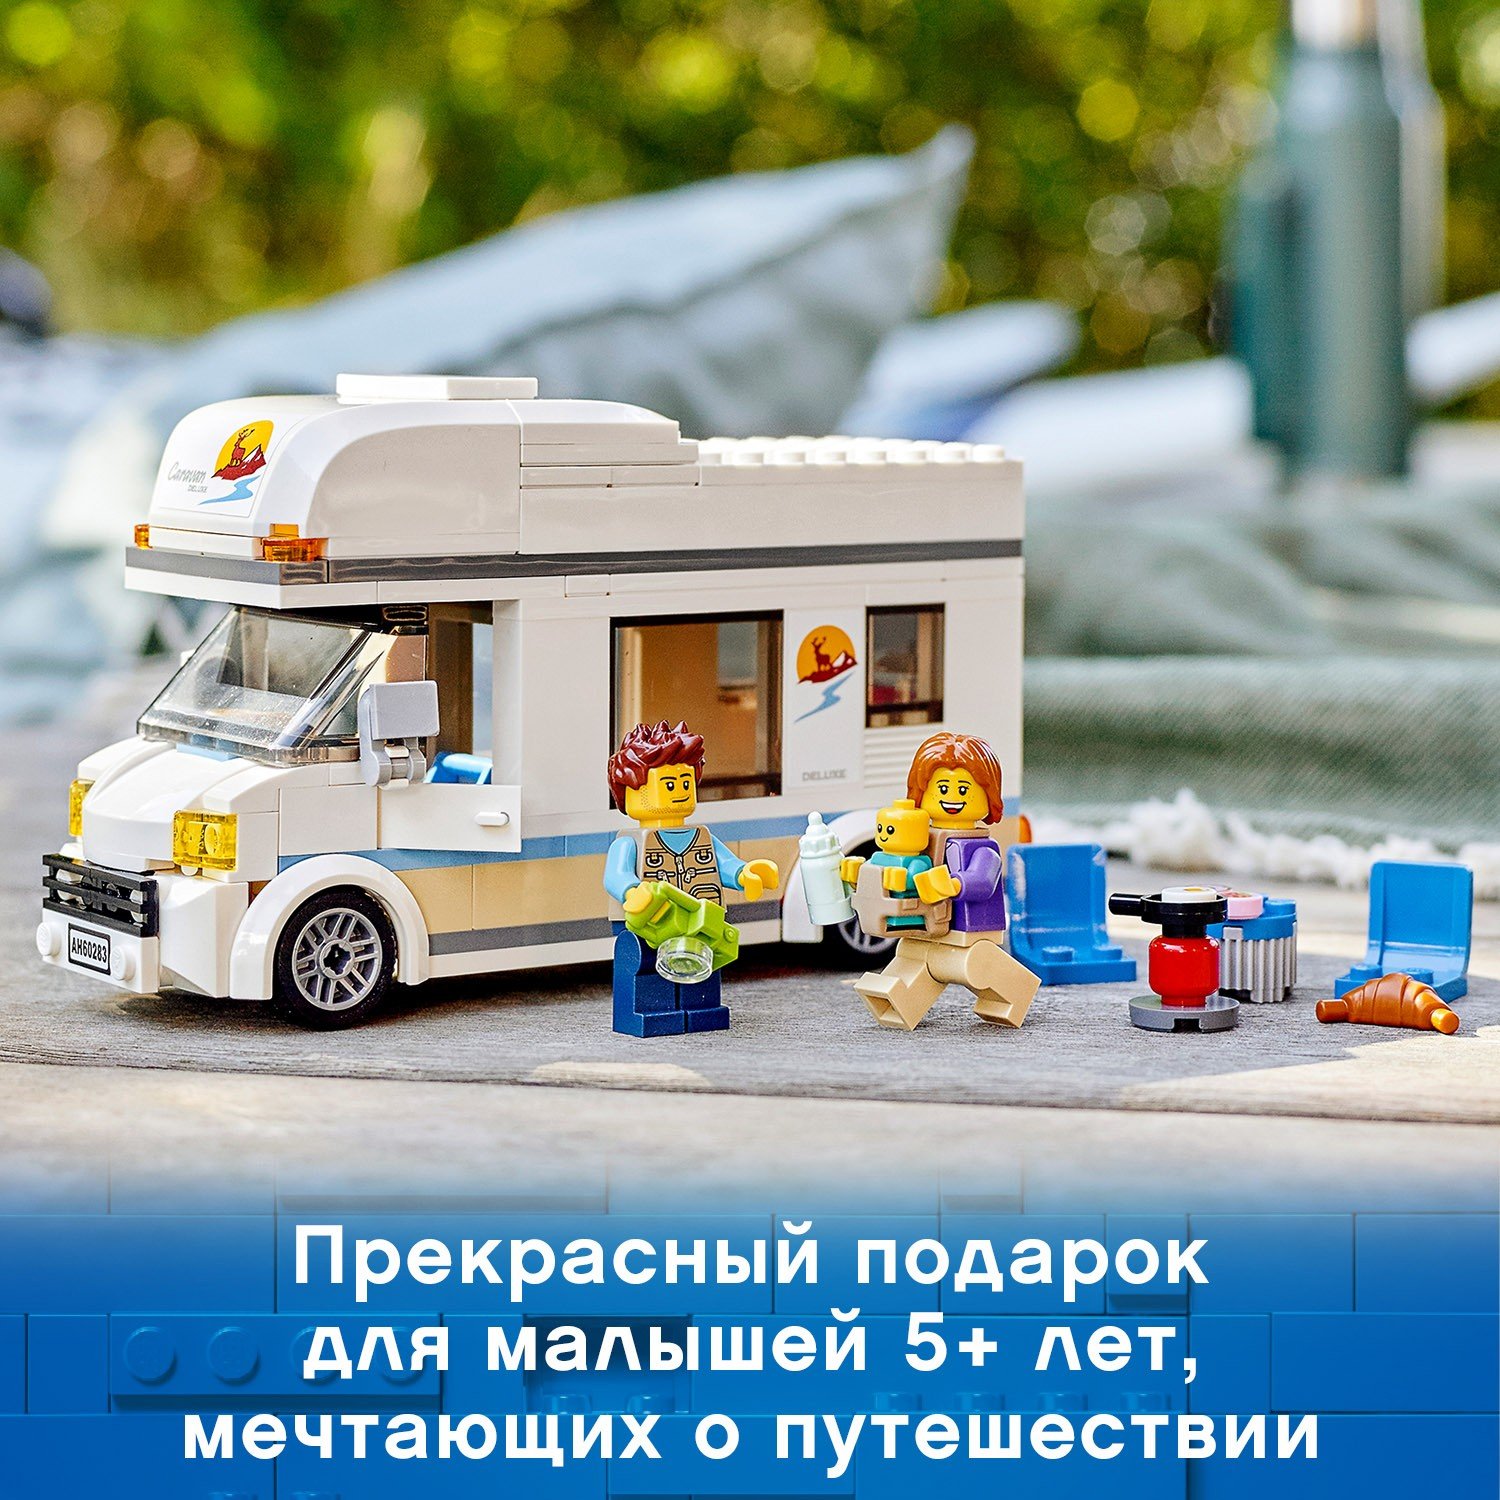 Lego City 60283 Отпуск в доме на колесах